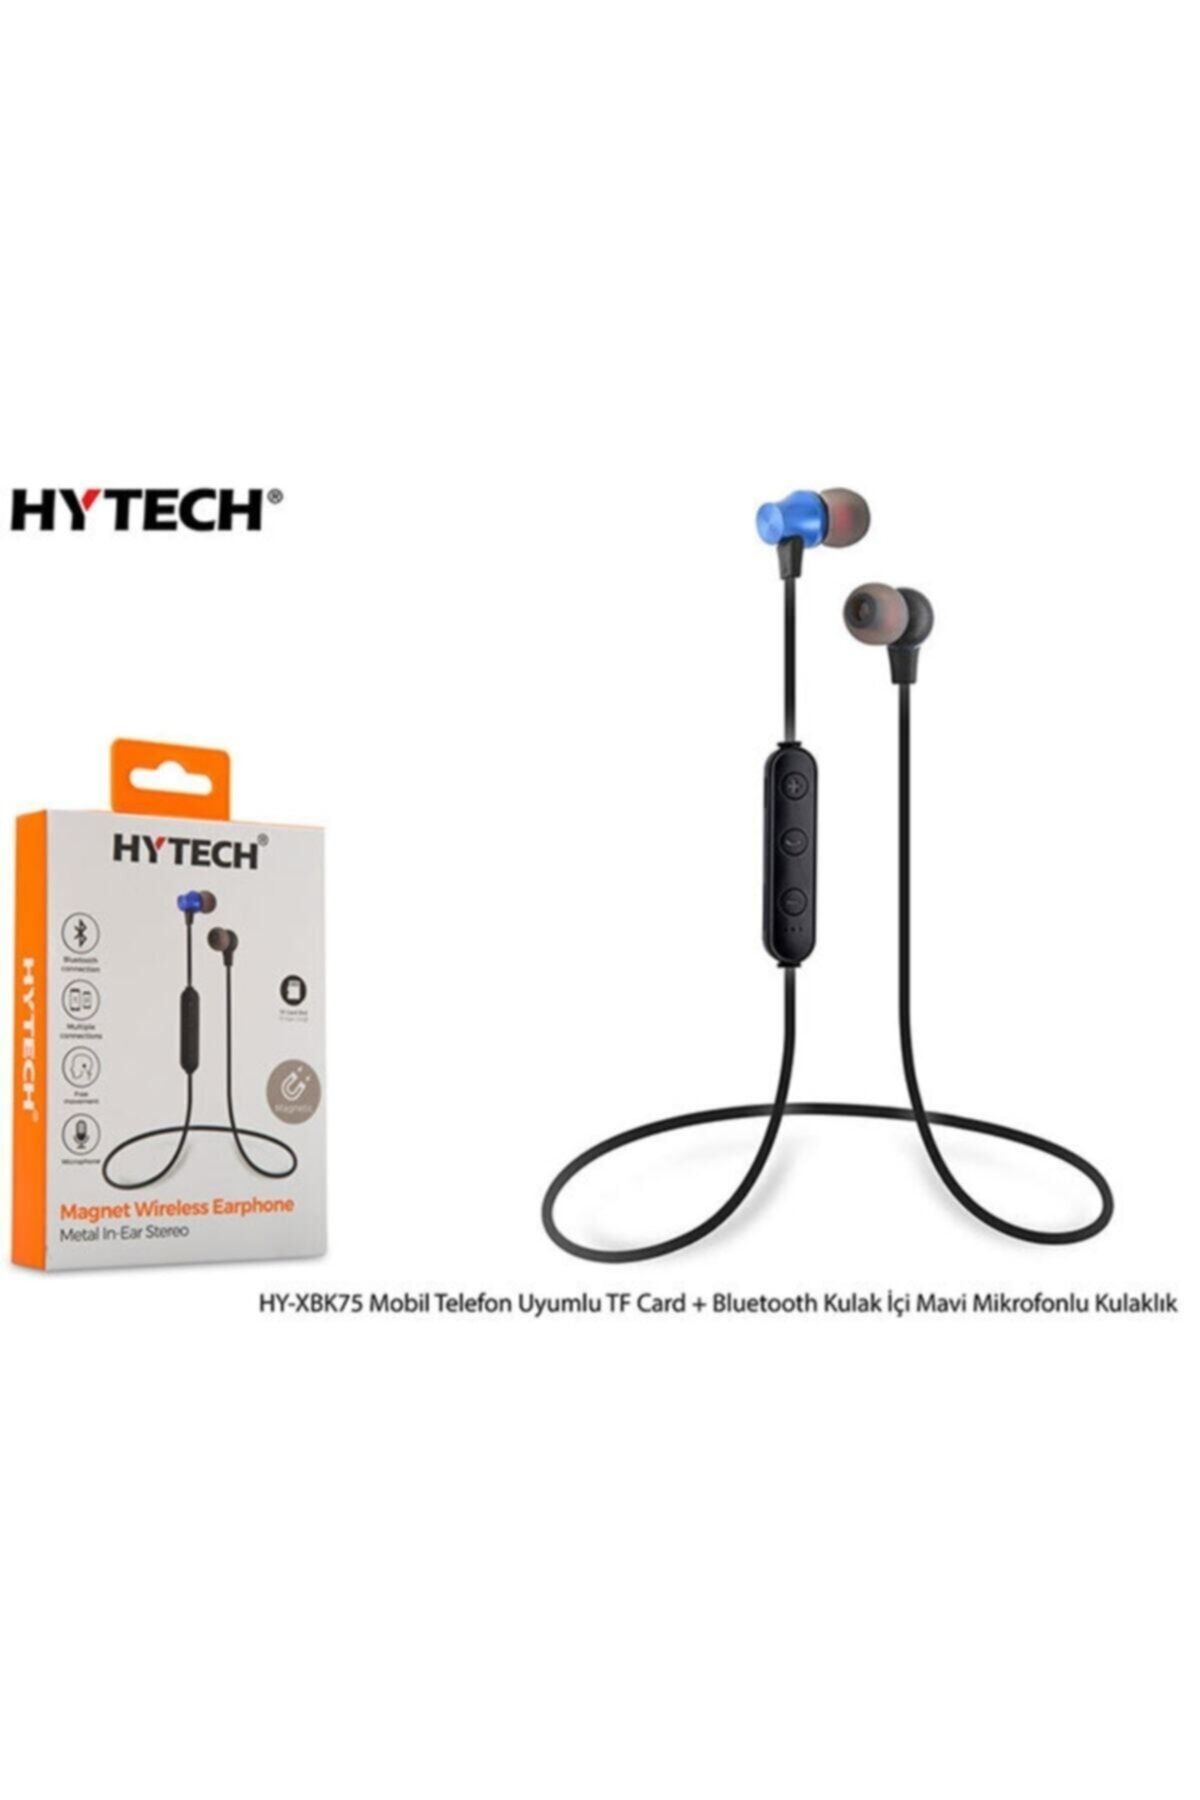 Hytech Hy-xbk75 Mobil Telefon Uyumlu Tf Card + Bluetooth Kulalık Içi Mavi Mikrofonlu Kulaklık